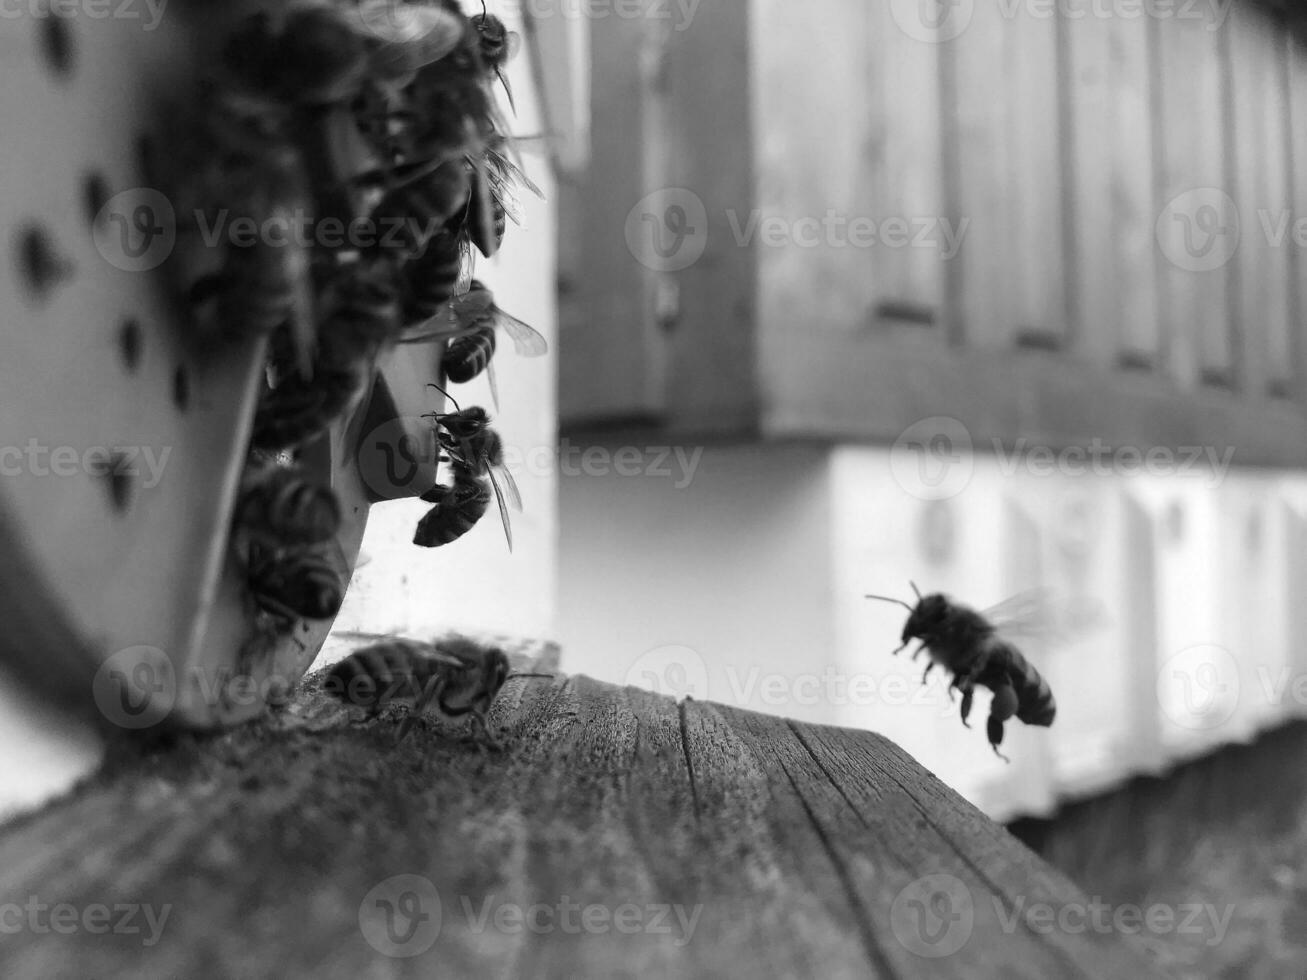 gevleugelde bij vliegt langzaam naar bijenkorf en verzamelt nectar voor honing foto